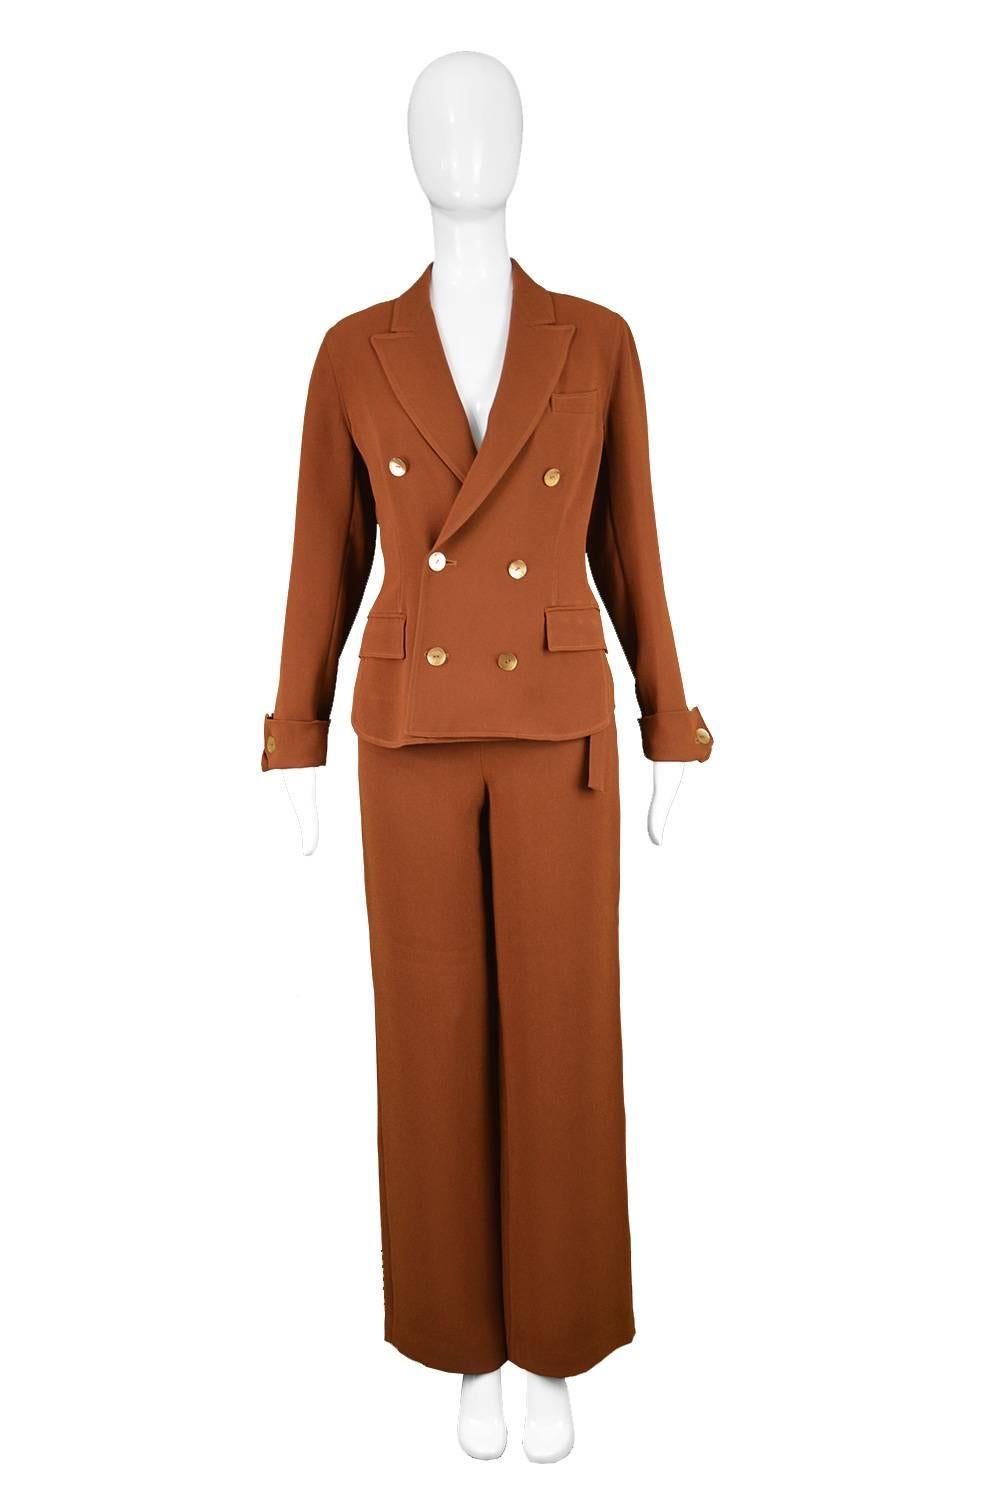 Jean Paul Gaultier Vintage 1990s Brown Crepe Wide Leg Palazzo Trouser Suit

Estimated Size: UK 10/ US 6/ EU 38. Please check measurements.
Jacket
Bust - 34” / 86cm
Waist - 30” / 76cm
Length (Shoulder to Hem) - 22” / 56cm
Shoulder to Shoulder - 16” /